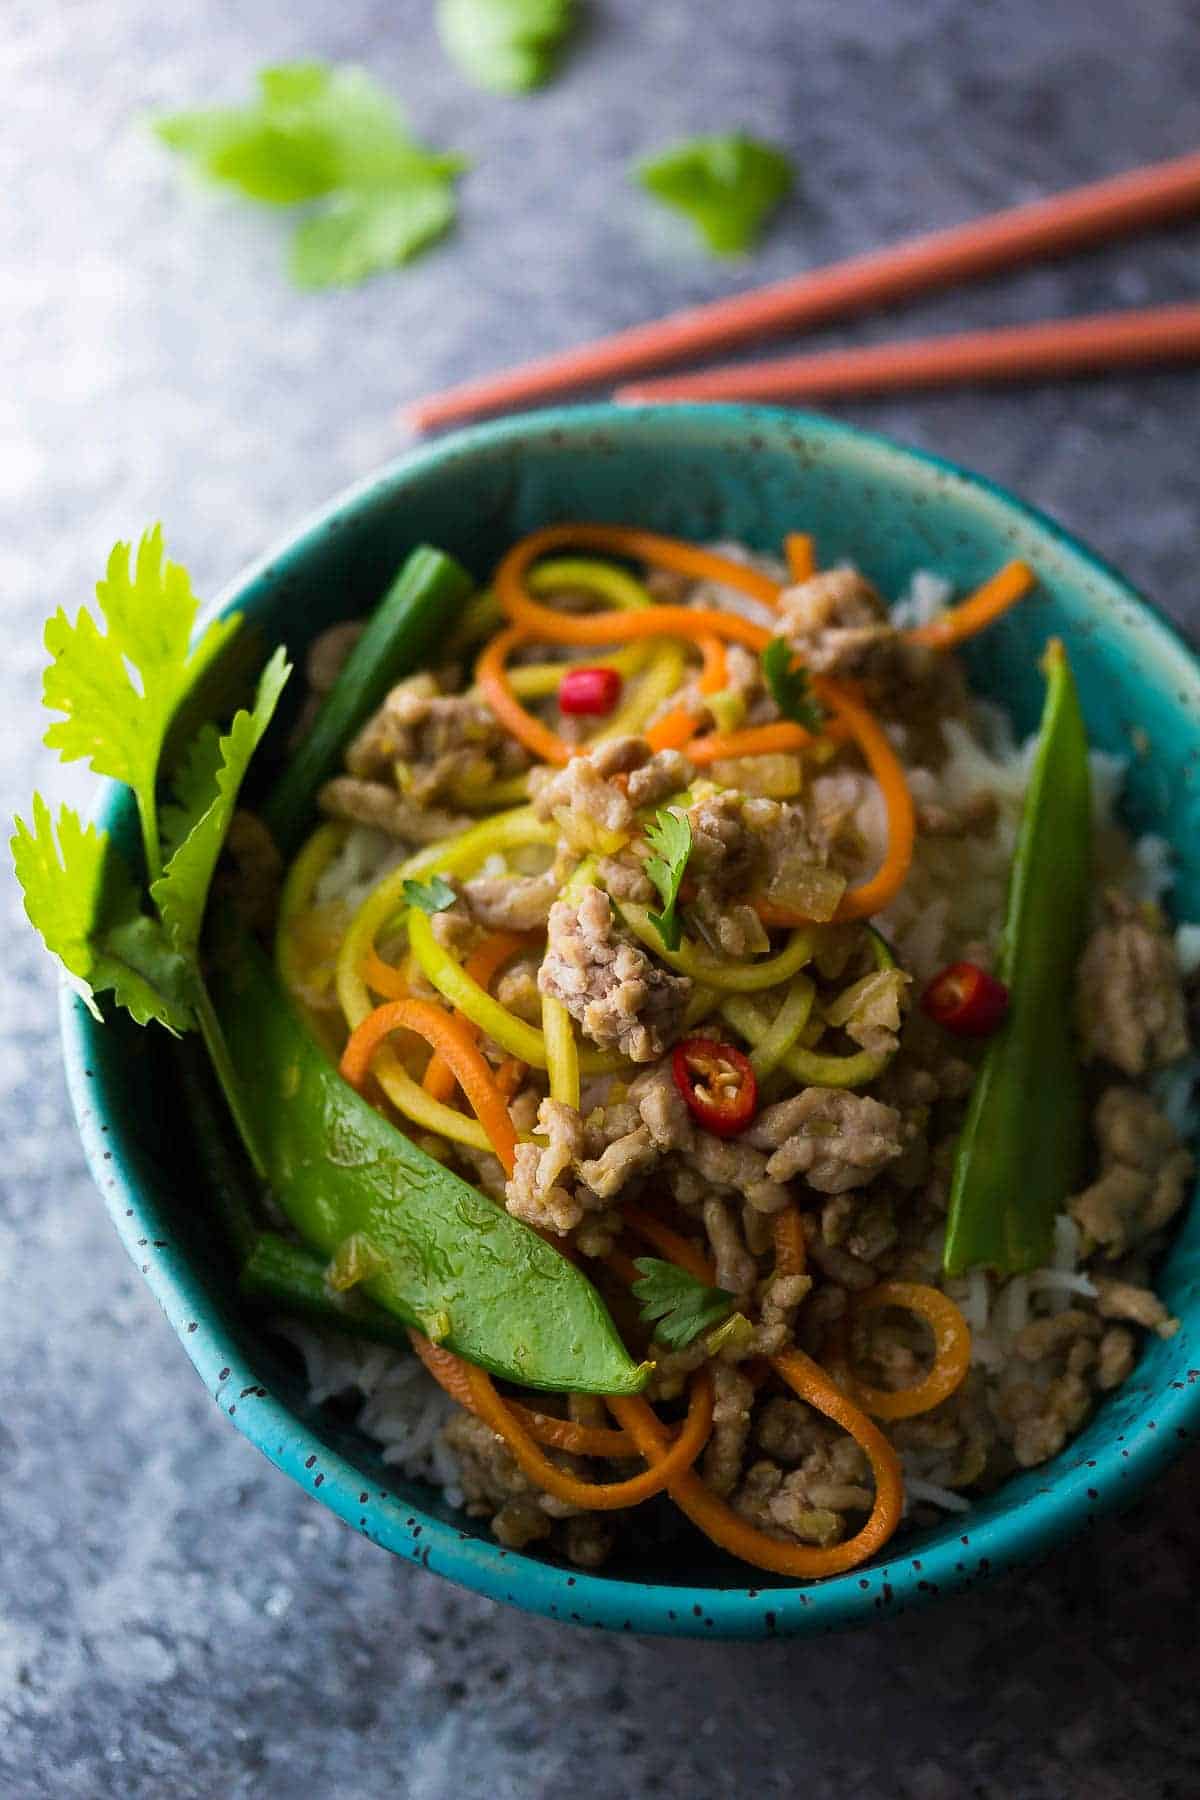 Lemongrass Thai Ground Pork Stir Fry in a blue bowl with red chopsticks